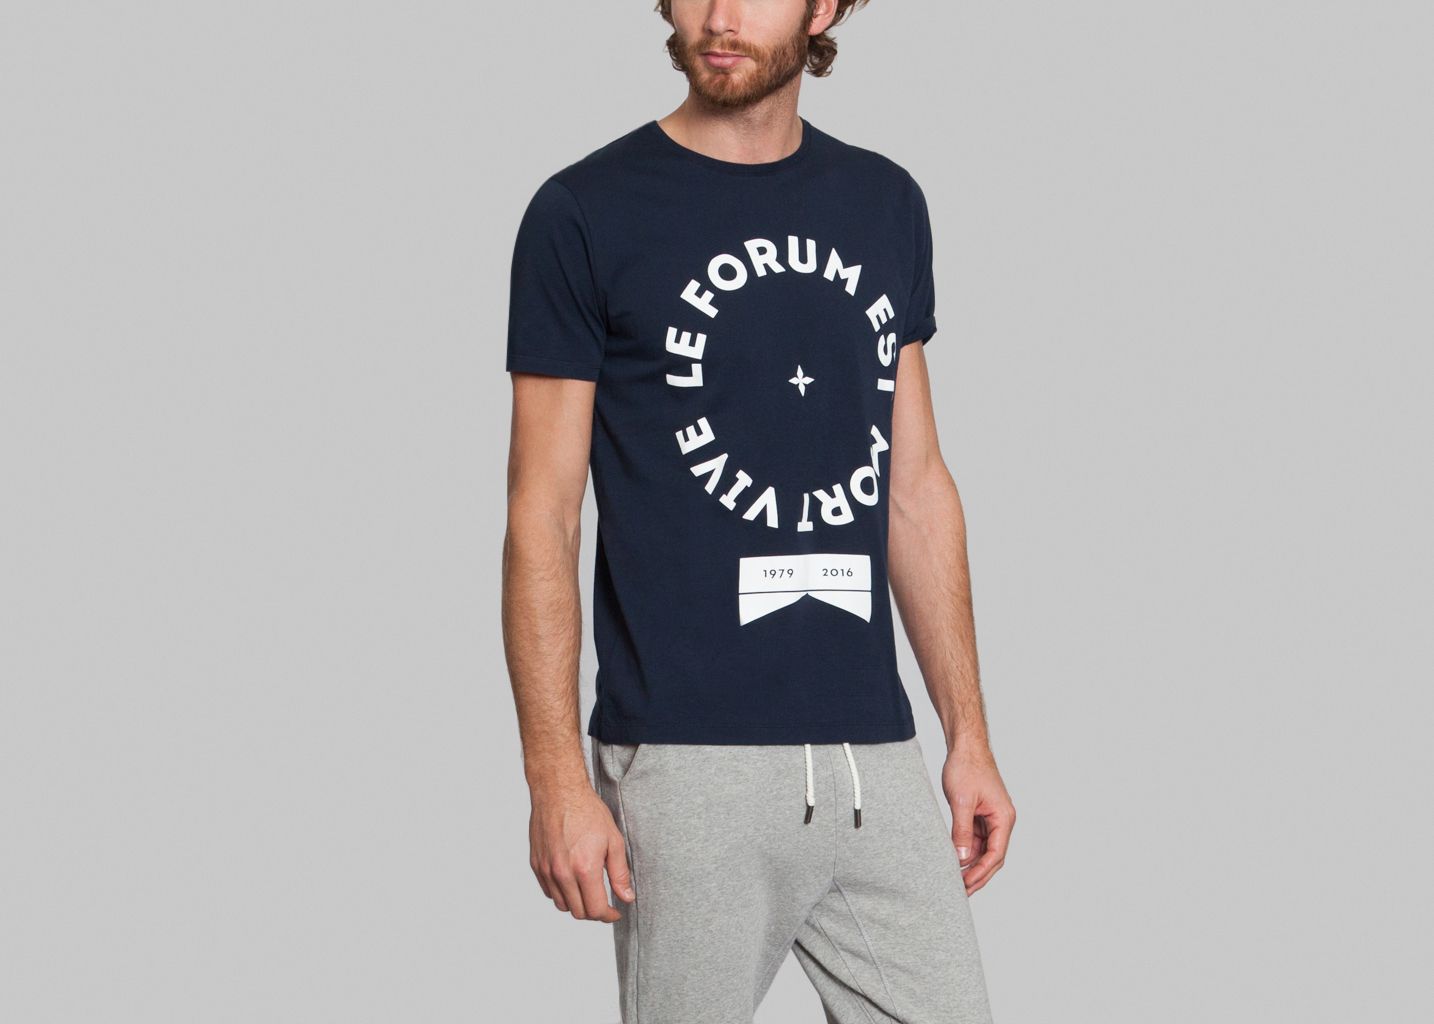 Forum T-shirt - Commune de Paris